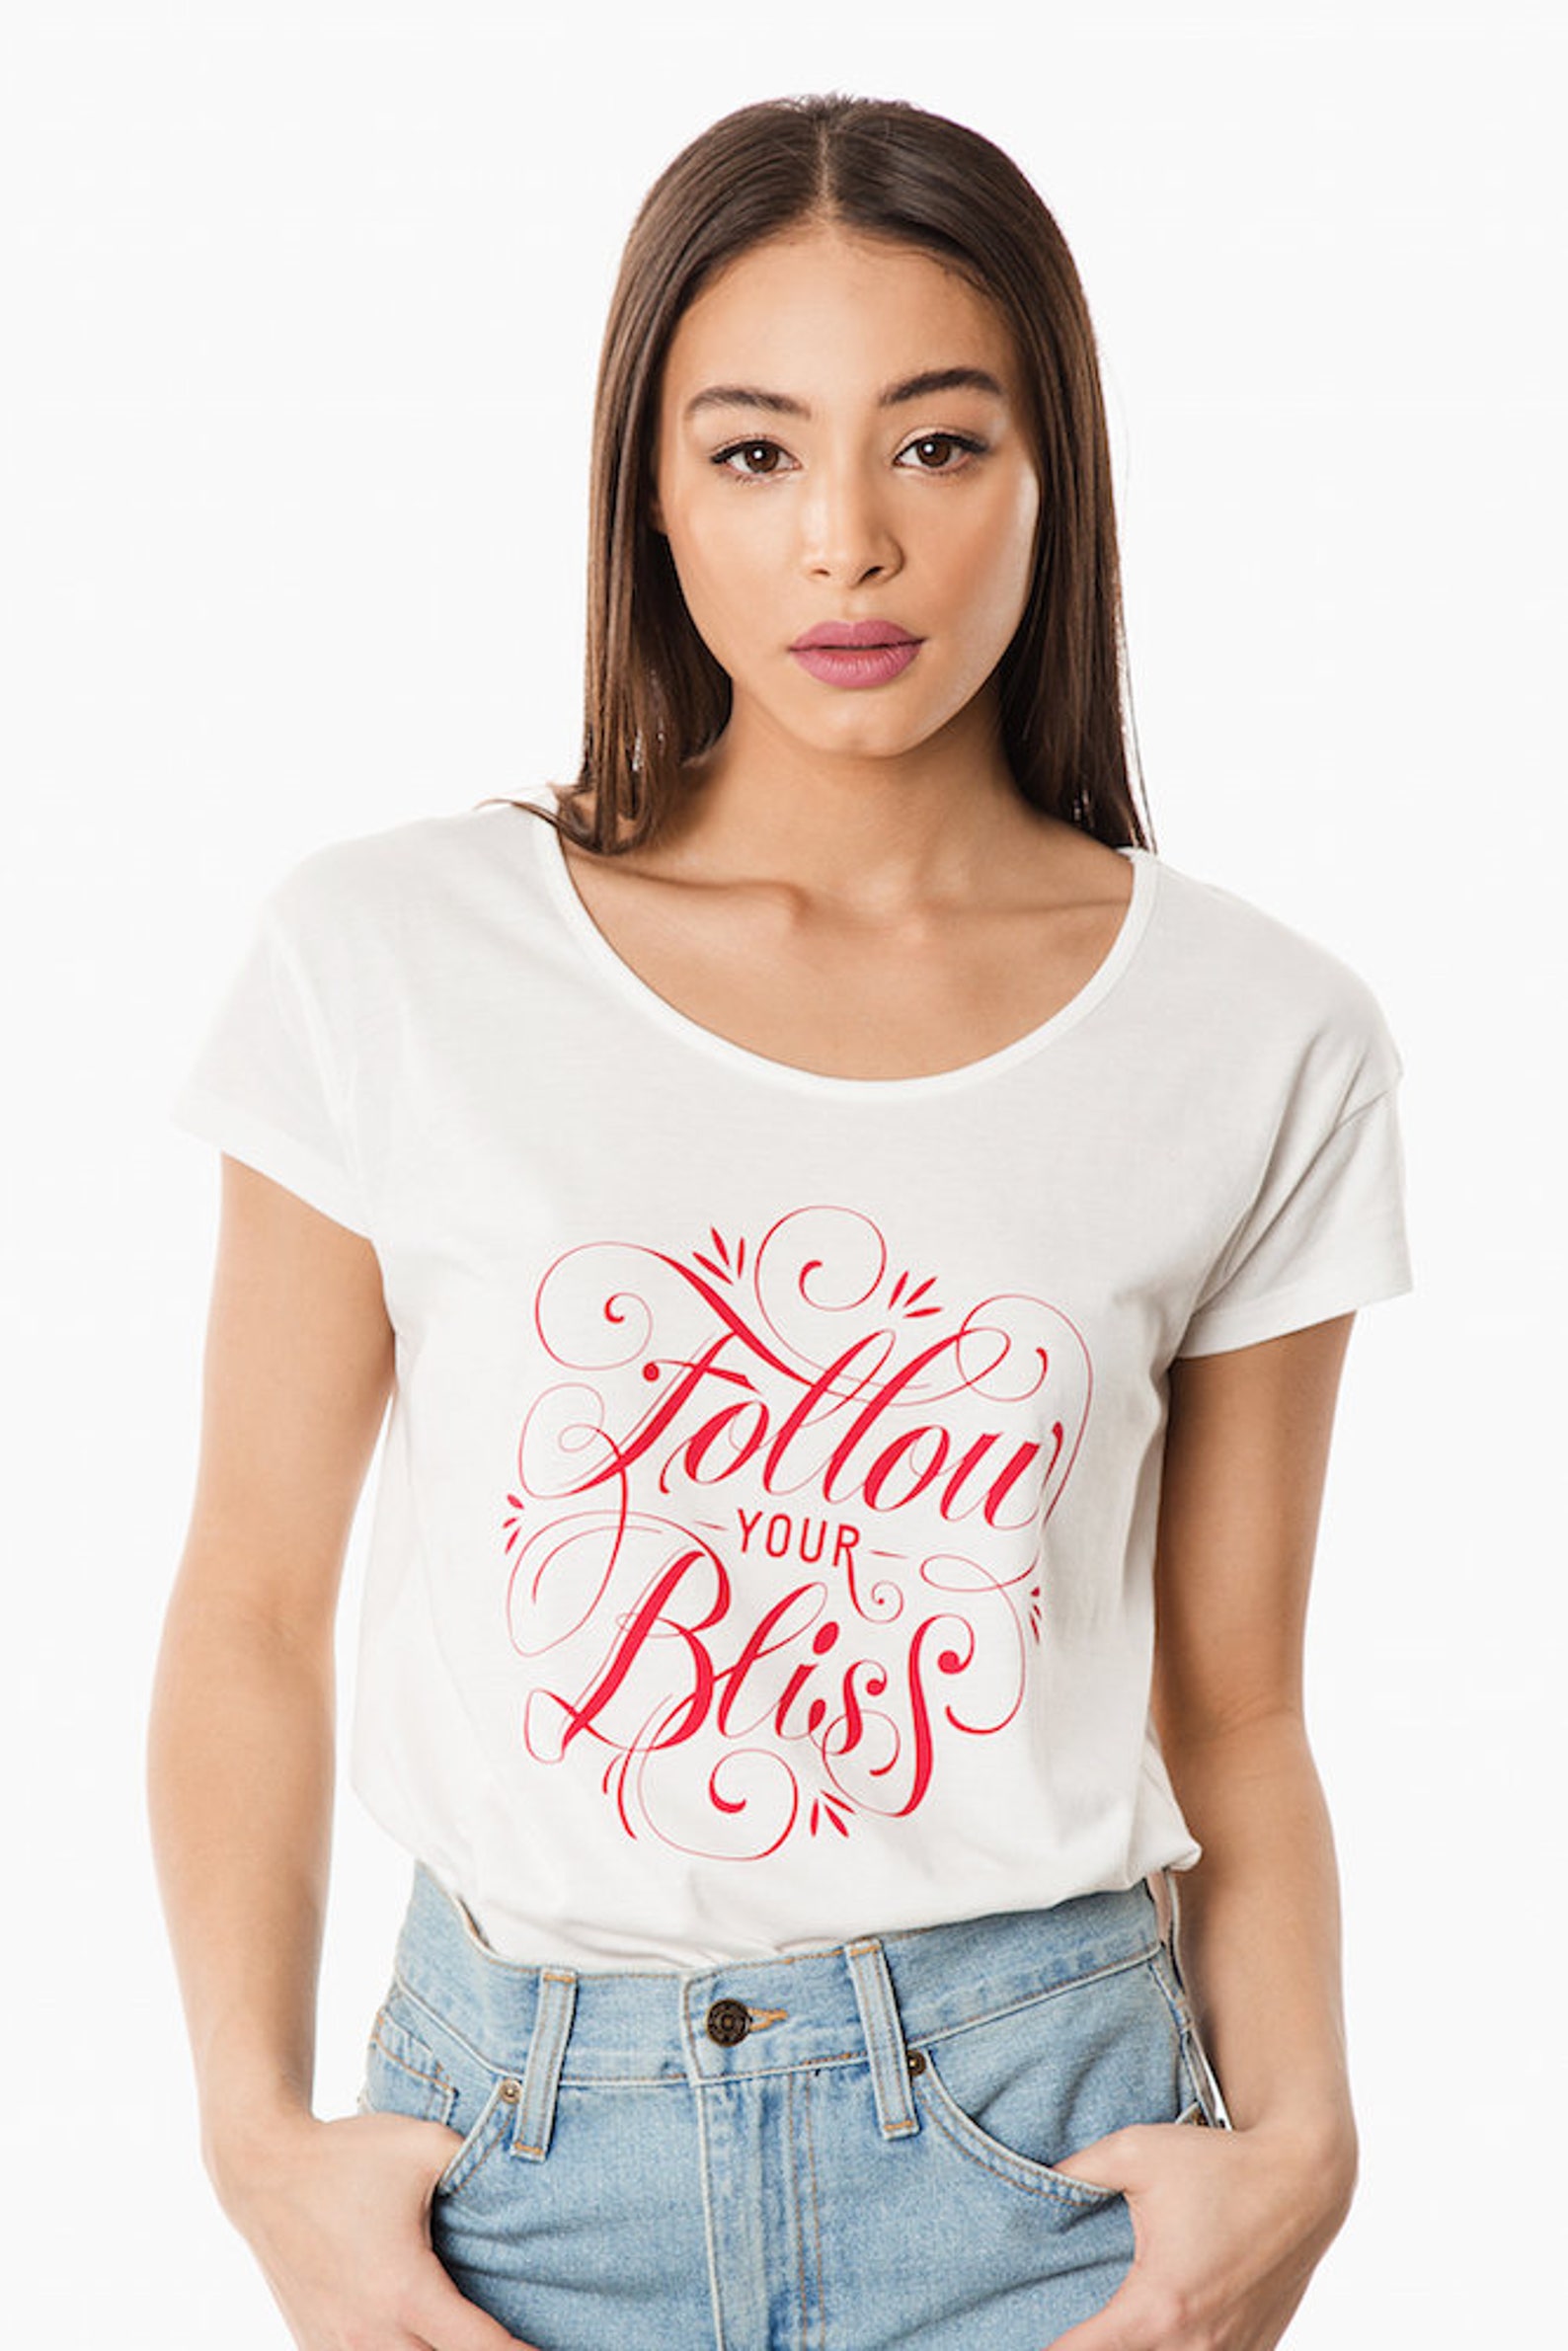 Follow Your Bliss Shirt Feminist Tee Women Empowerment | Etsy